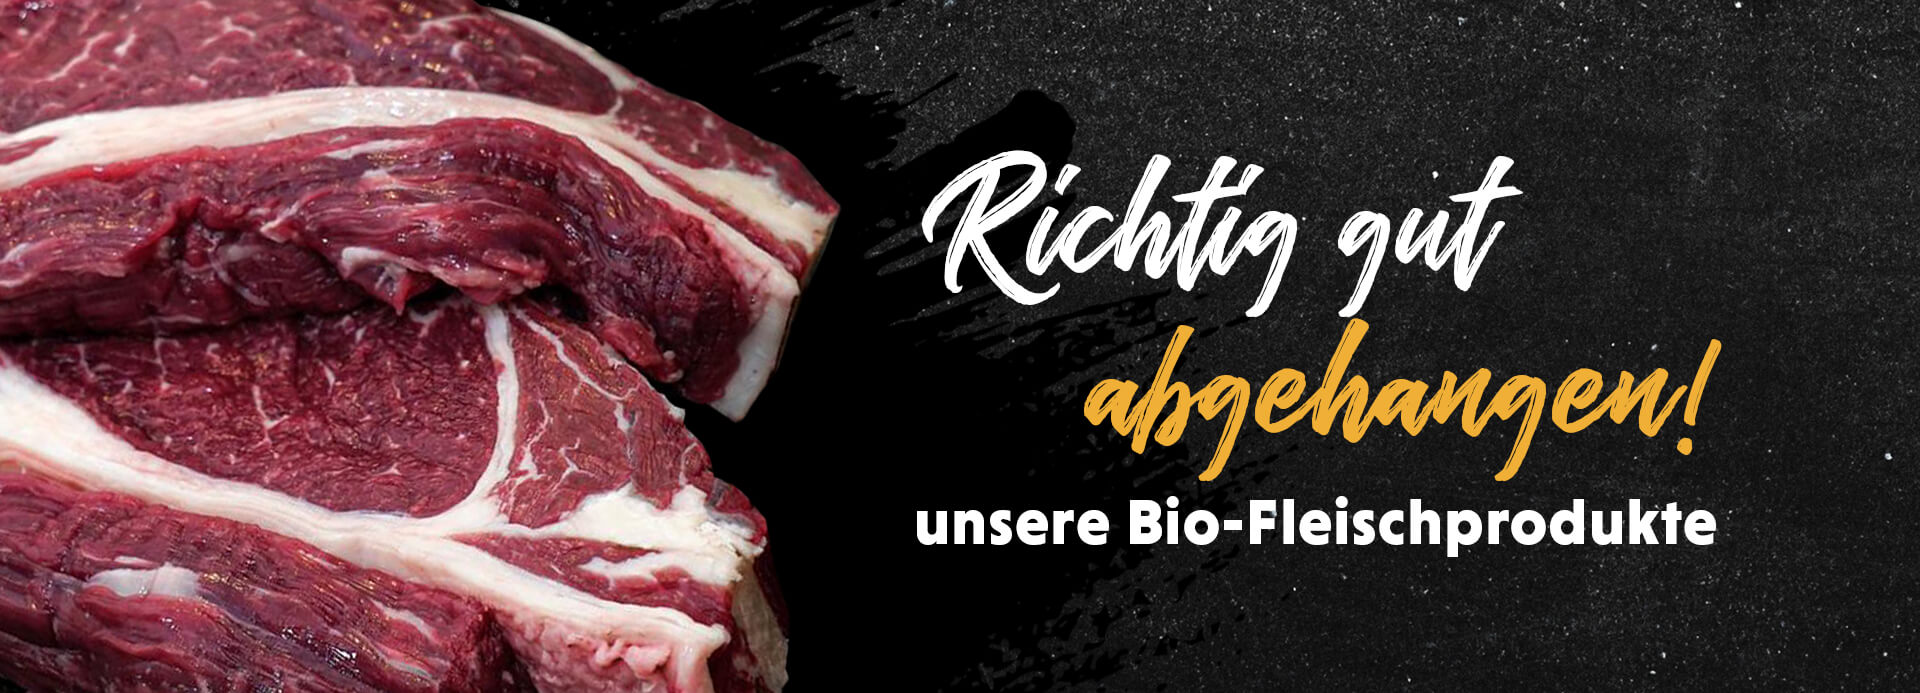 Fleisch auf schwarzem Hintergrund. Auf dem Bild steht die Überschrift „Richtig gut abgehangen! unsere Bio-Fleischprodukte“.